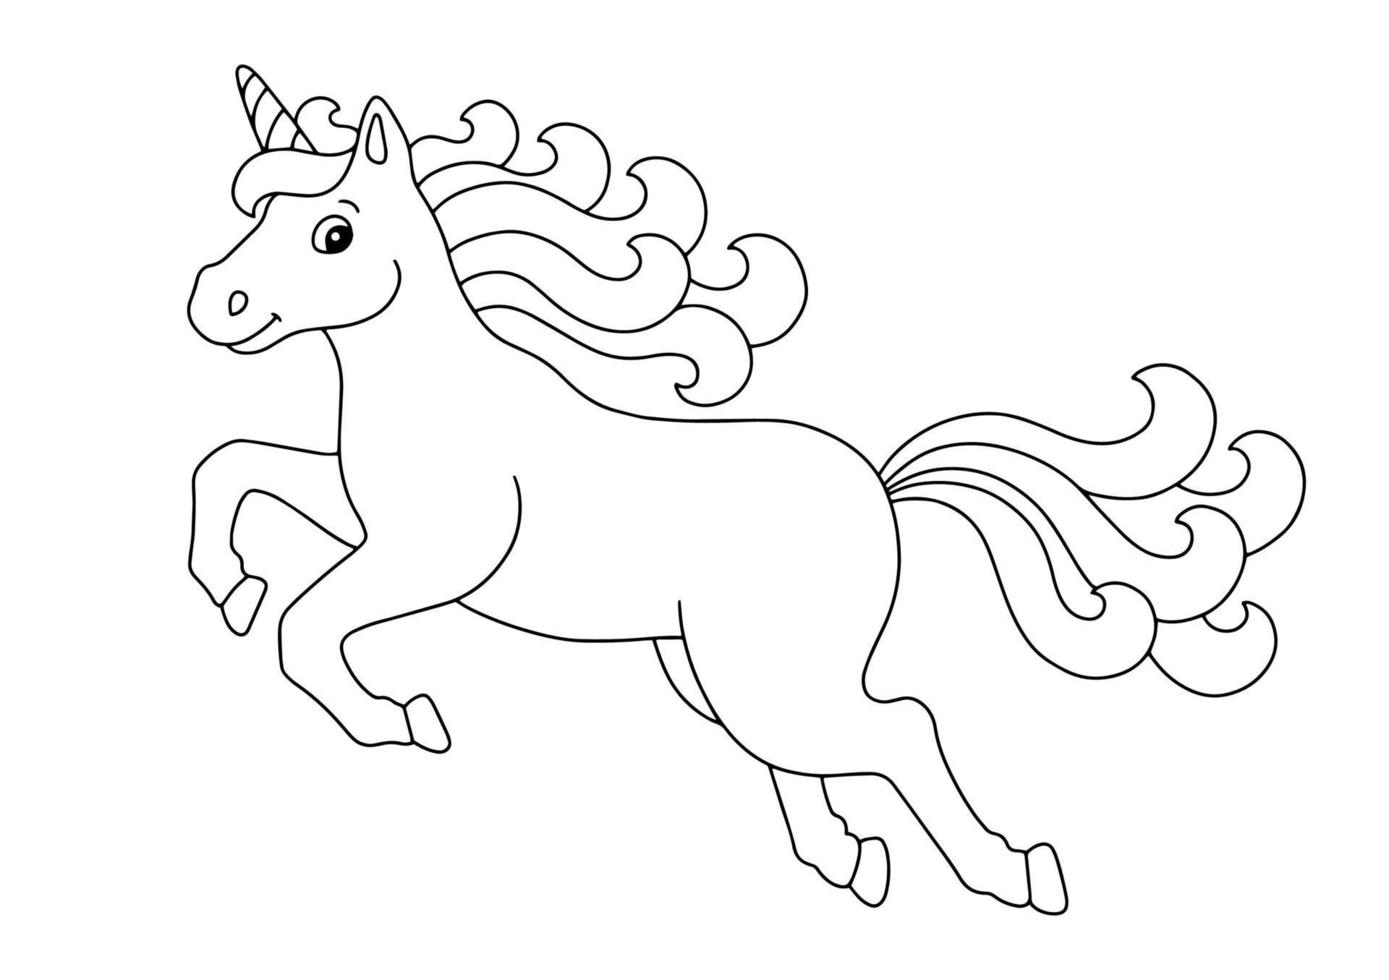 bellissimo unicorno che salta. pagina del libro da colorare per bambini. personaggio in stile cartone animato. illustrazione vettoriale isolato su sfondo bianco.